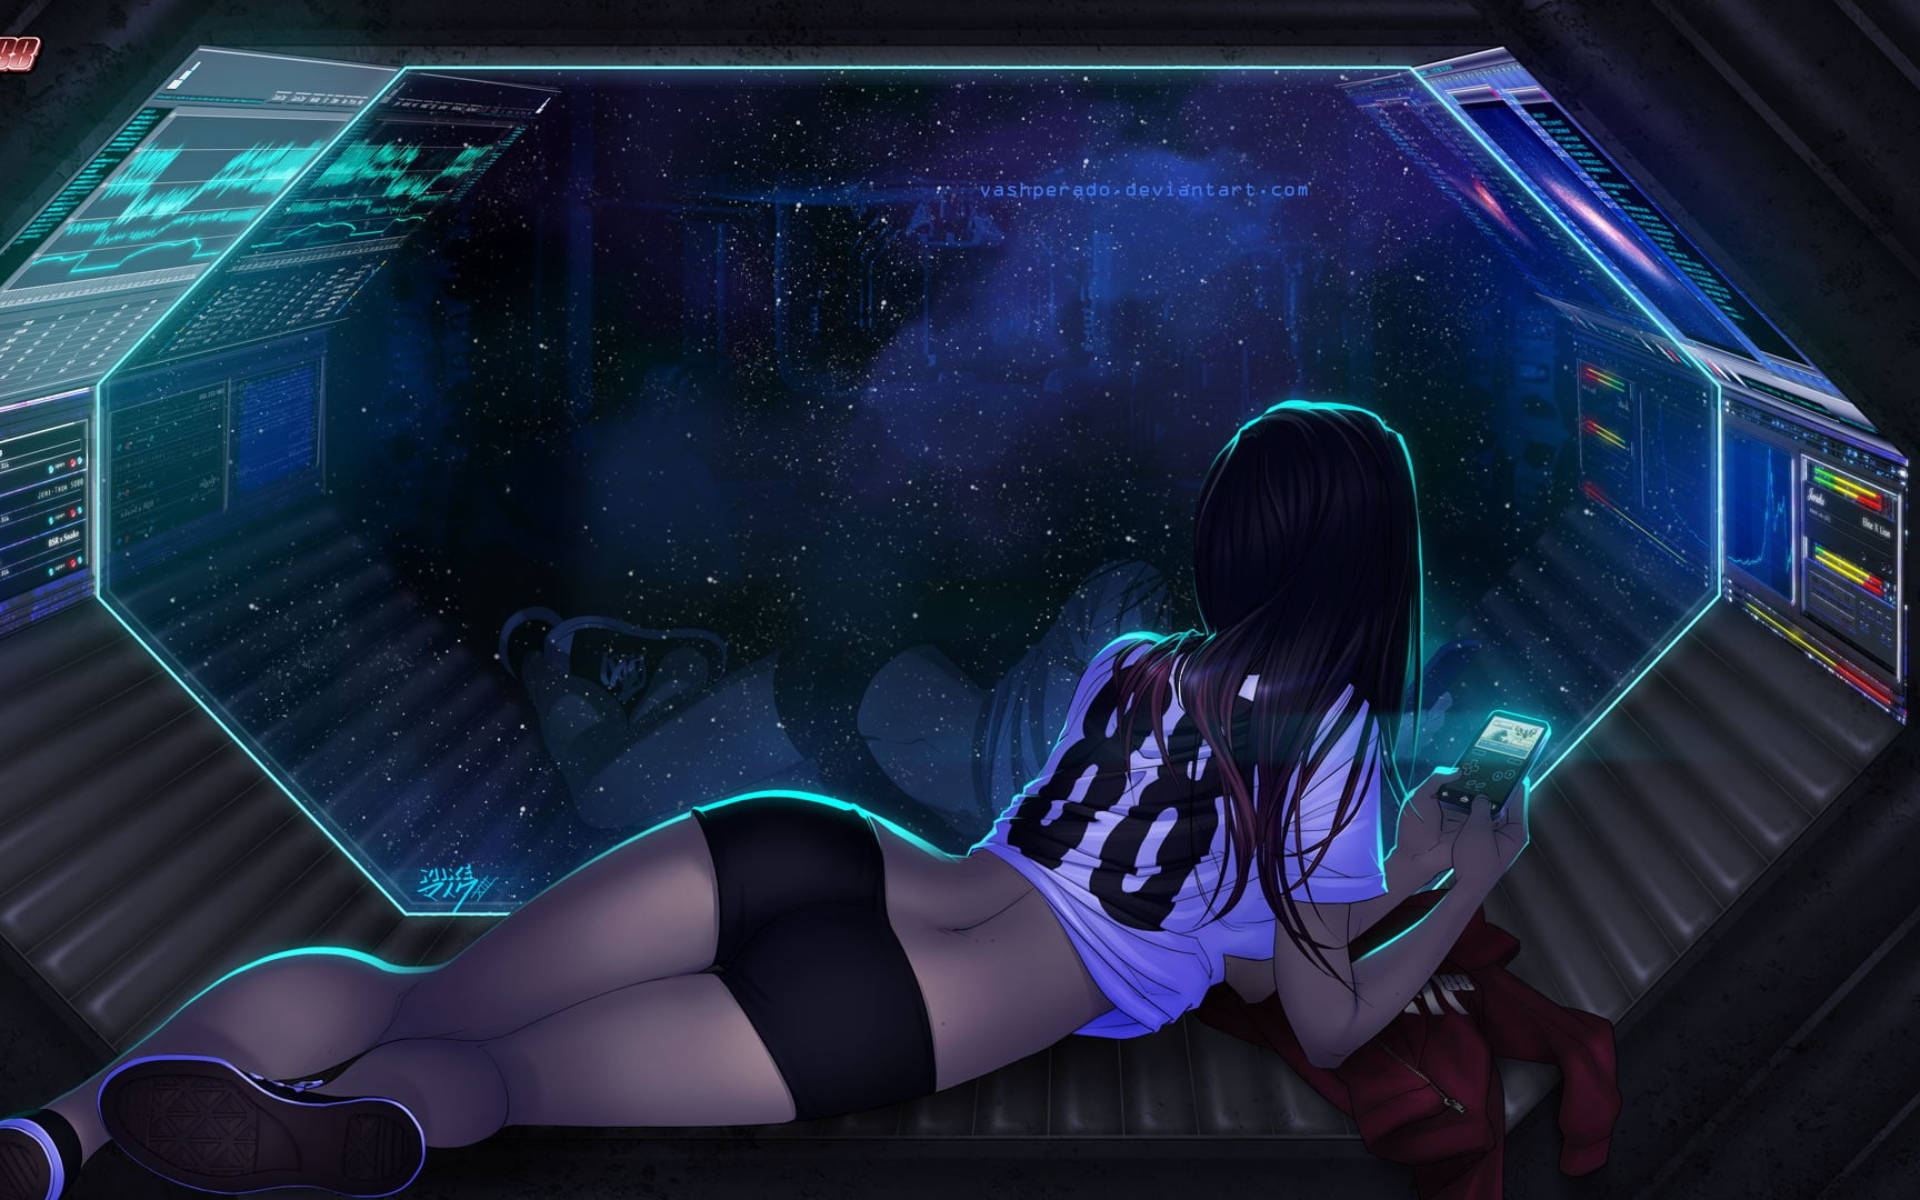 sexy-anime-girl-in-space-jtrt80grfiym6iyx.jpeg